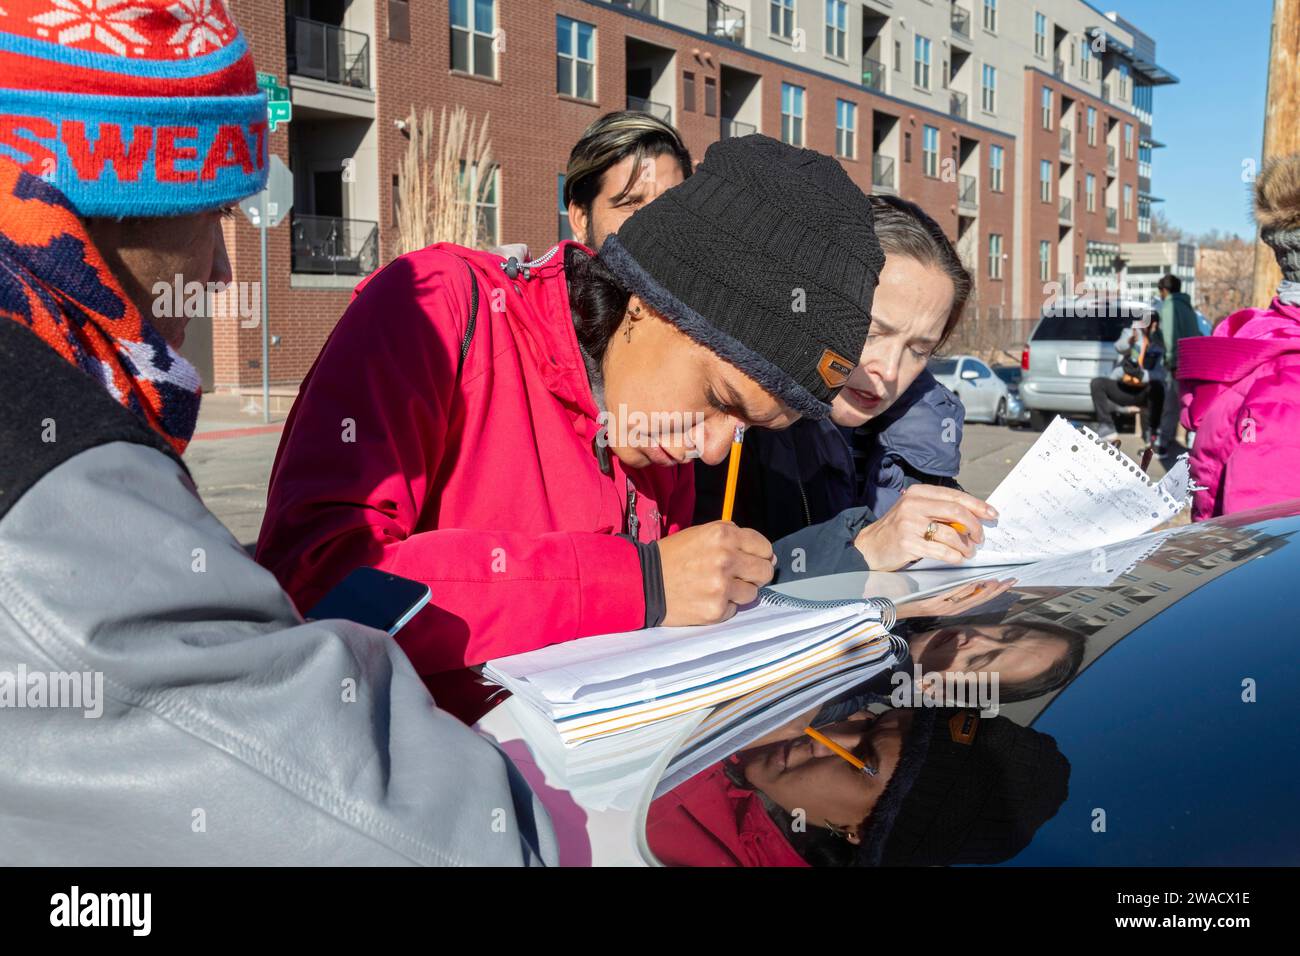 Denver, Colorado - les immigrants, principalement du Venezuela, vivent dans un camp de tentes près du centre-ville de Denver. Ceux qui cherchent du travail mettent leurs noms sur une liste. Le Banque D'Images